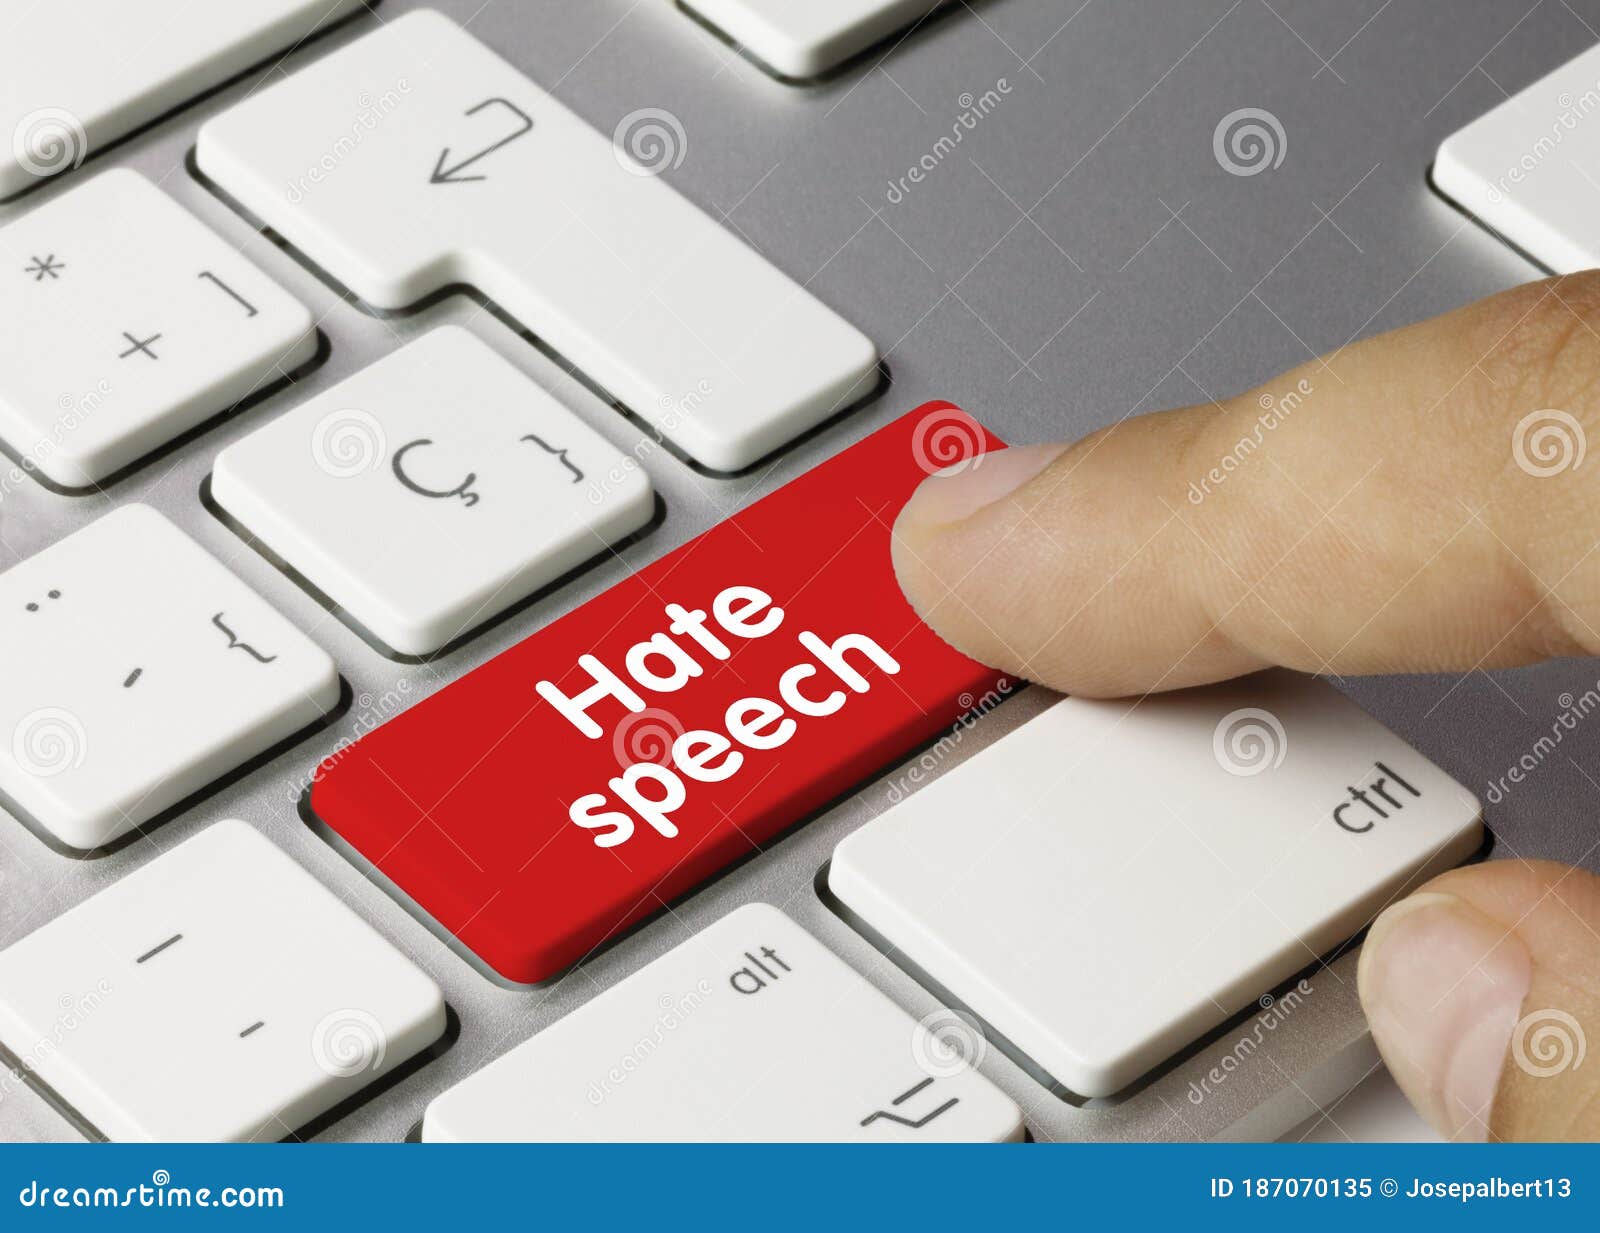 hate speech - inscription on red keyboard key